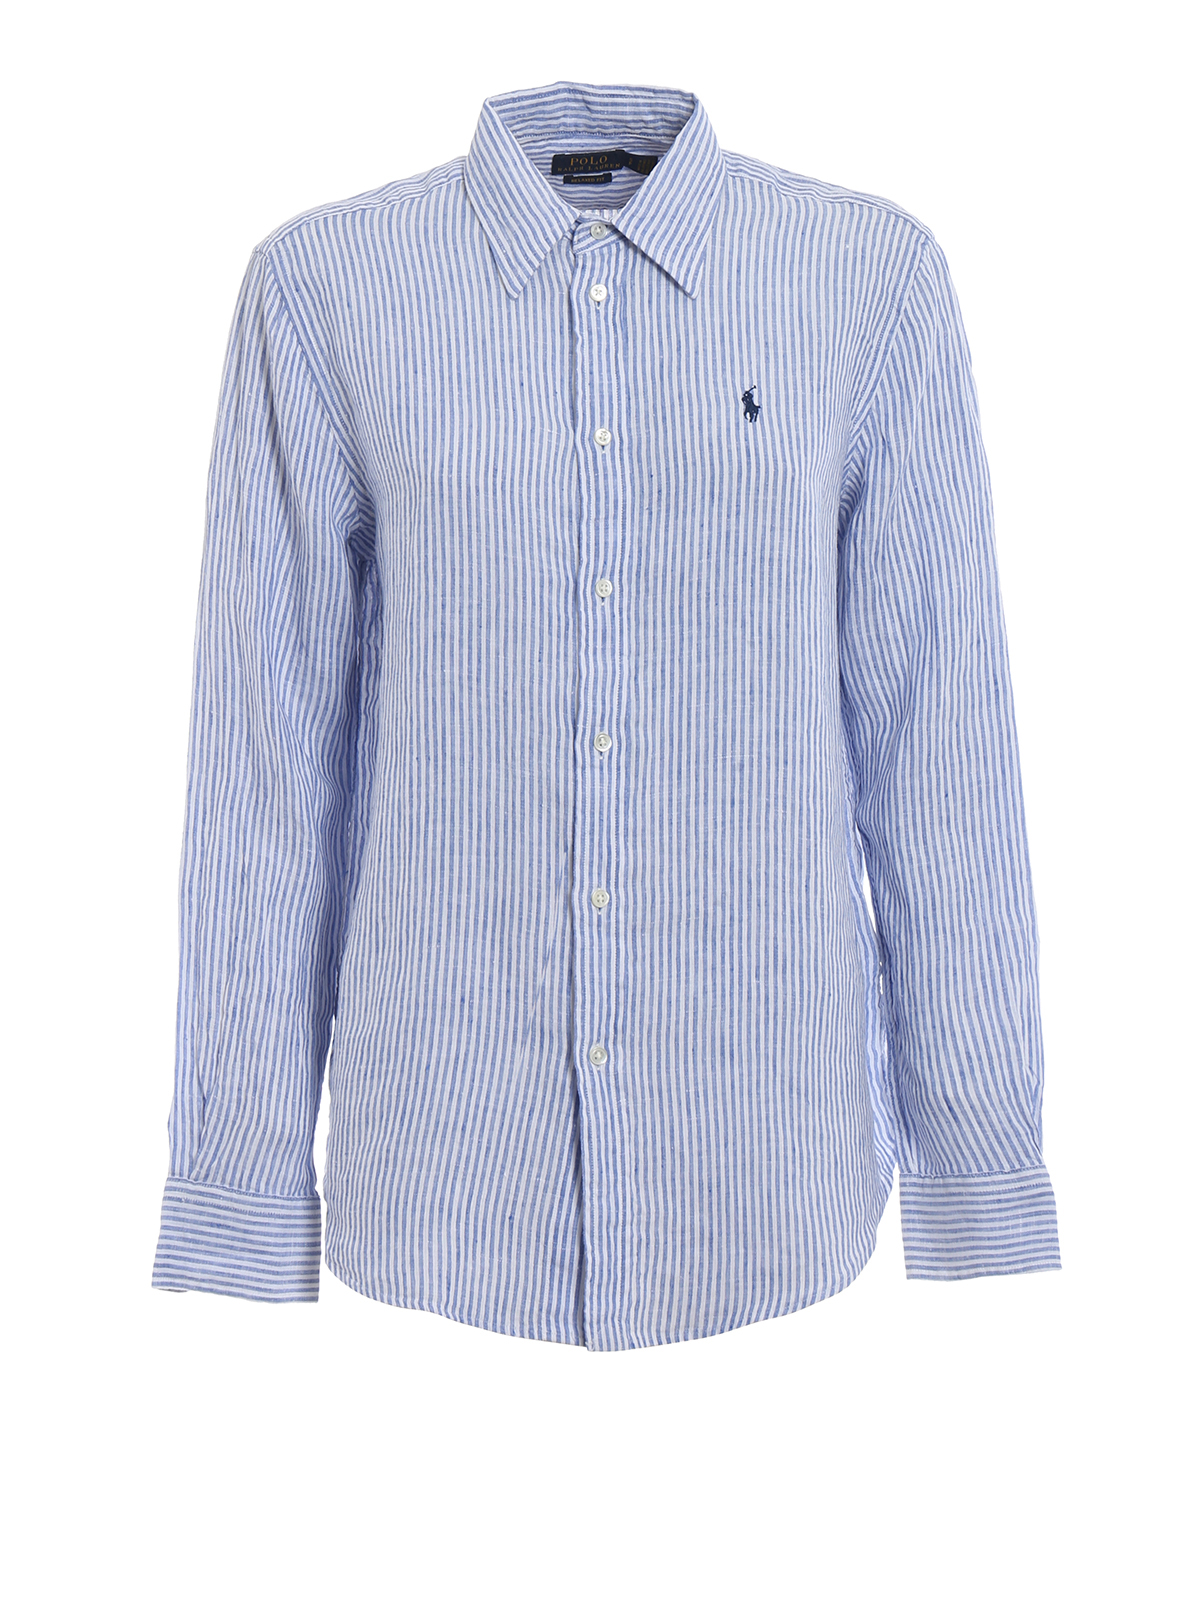 Shirts Polo Ralph Lauren - Relaxed fit striped linen shirt 